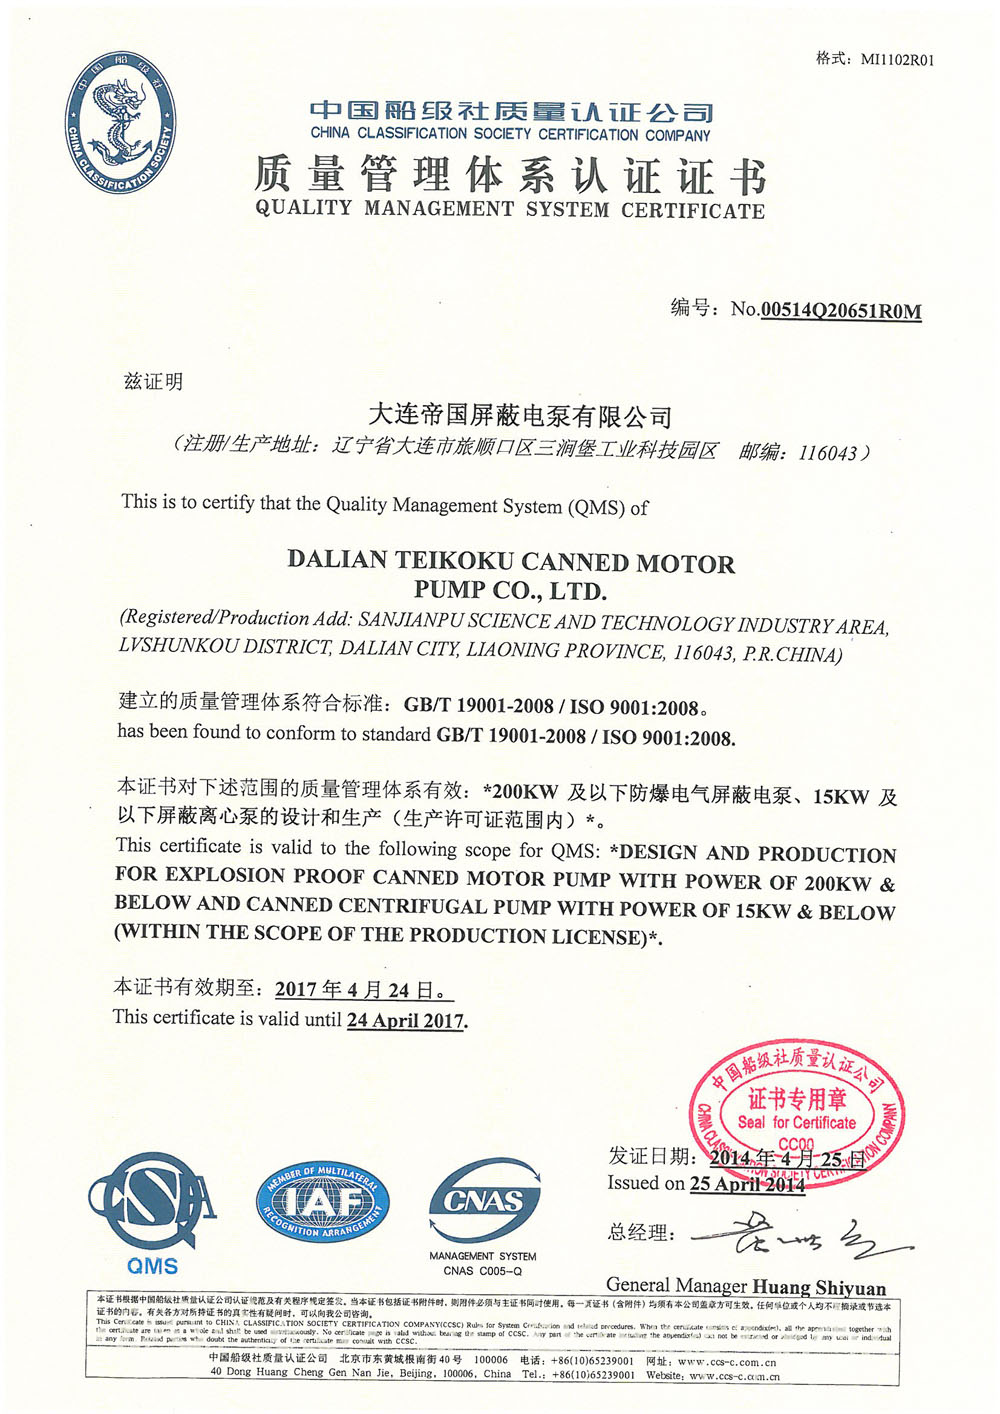 我公司顺利通过CCS中国船级社质量认证年审